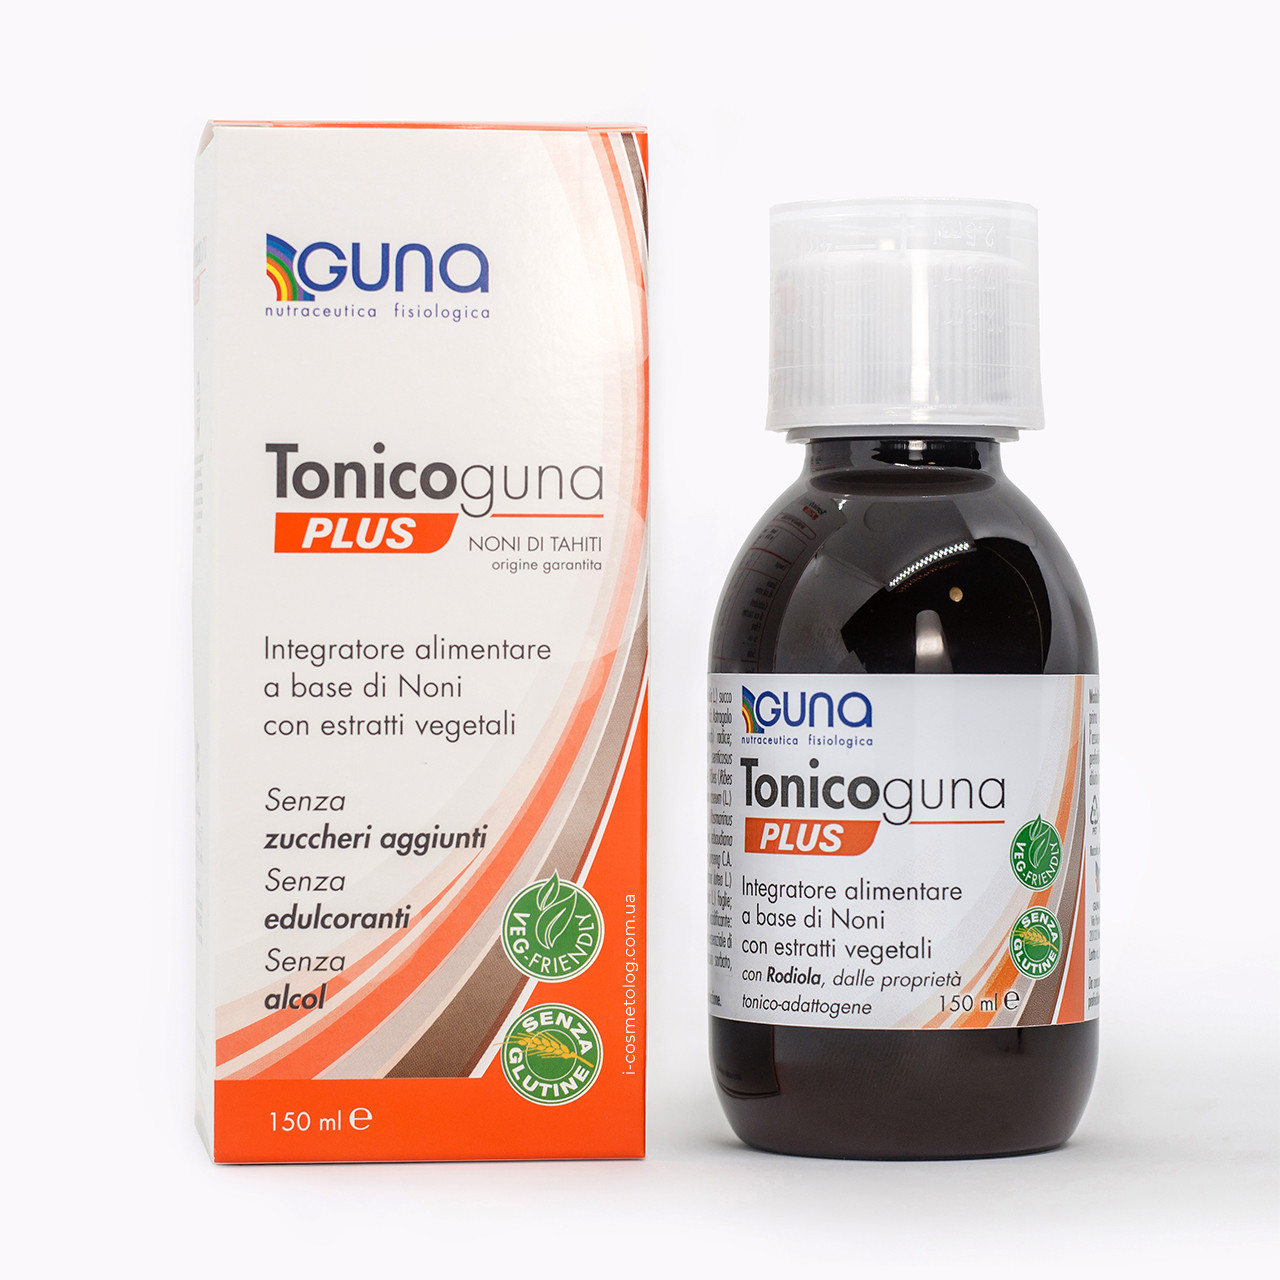 TonicoGuna (GUNA, Італія) Сироп, 150 мл Тонізуюча дієтична добавка на рослинних екстрактах